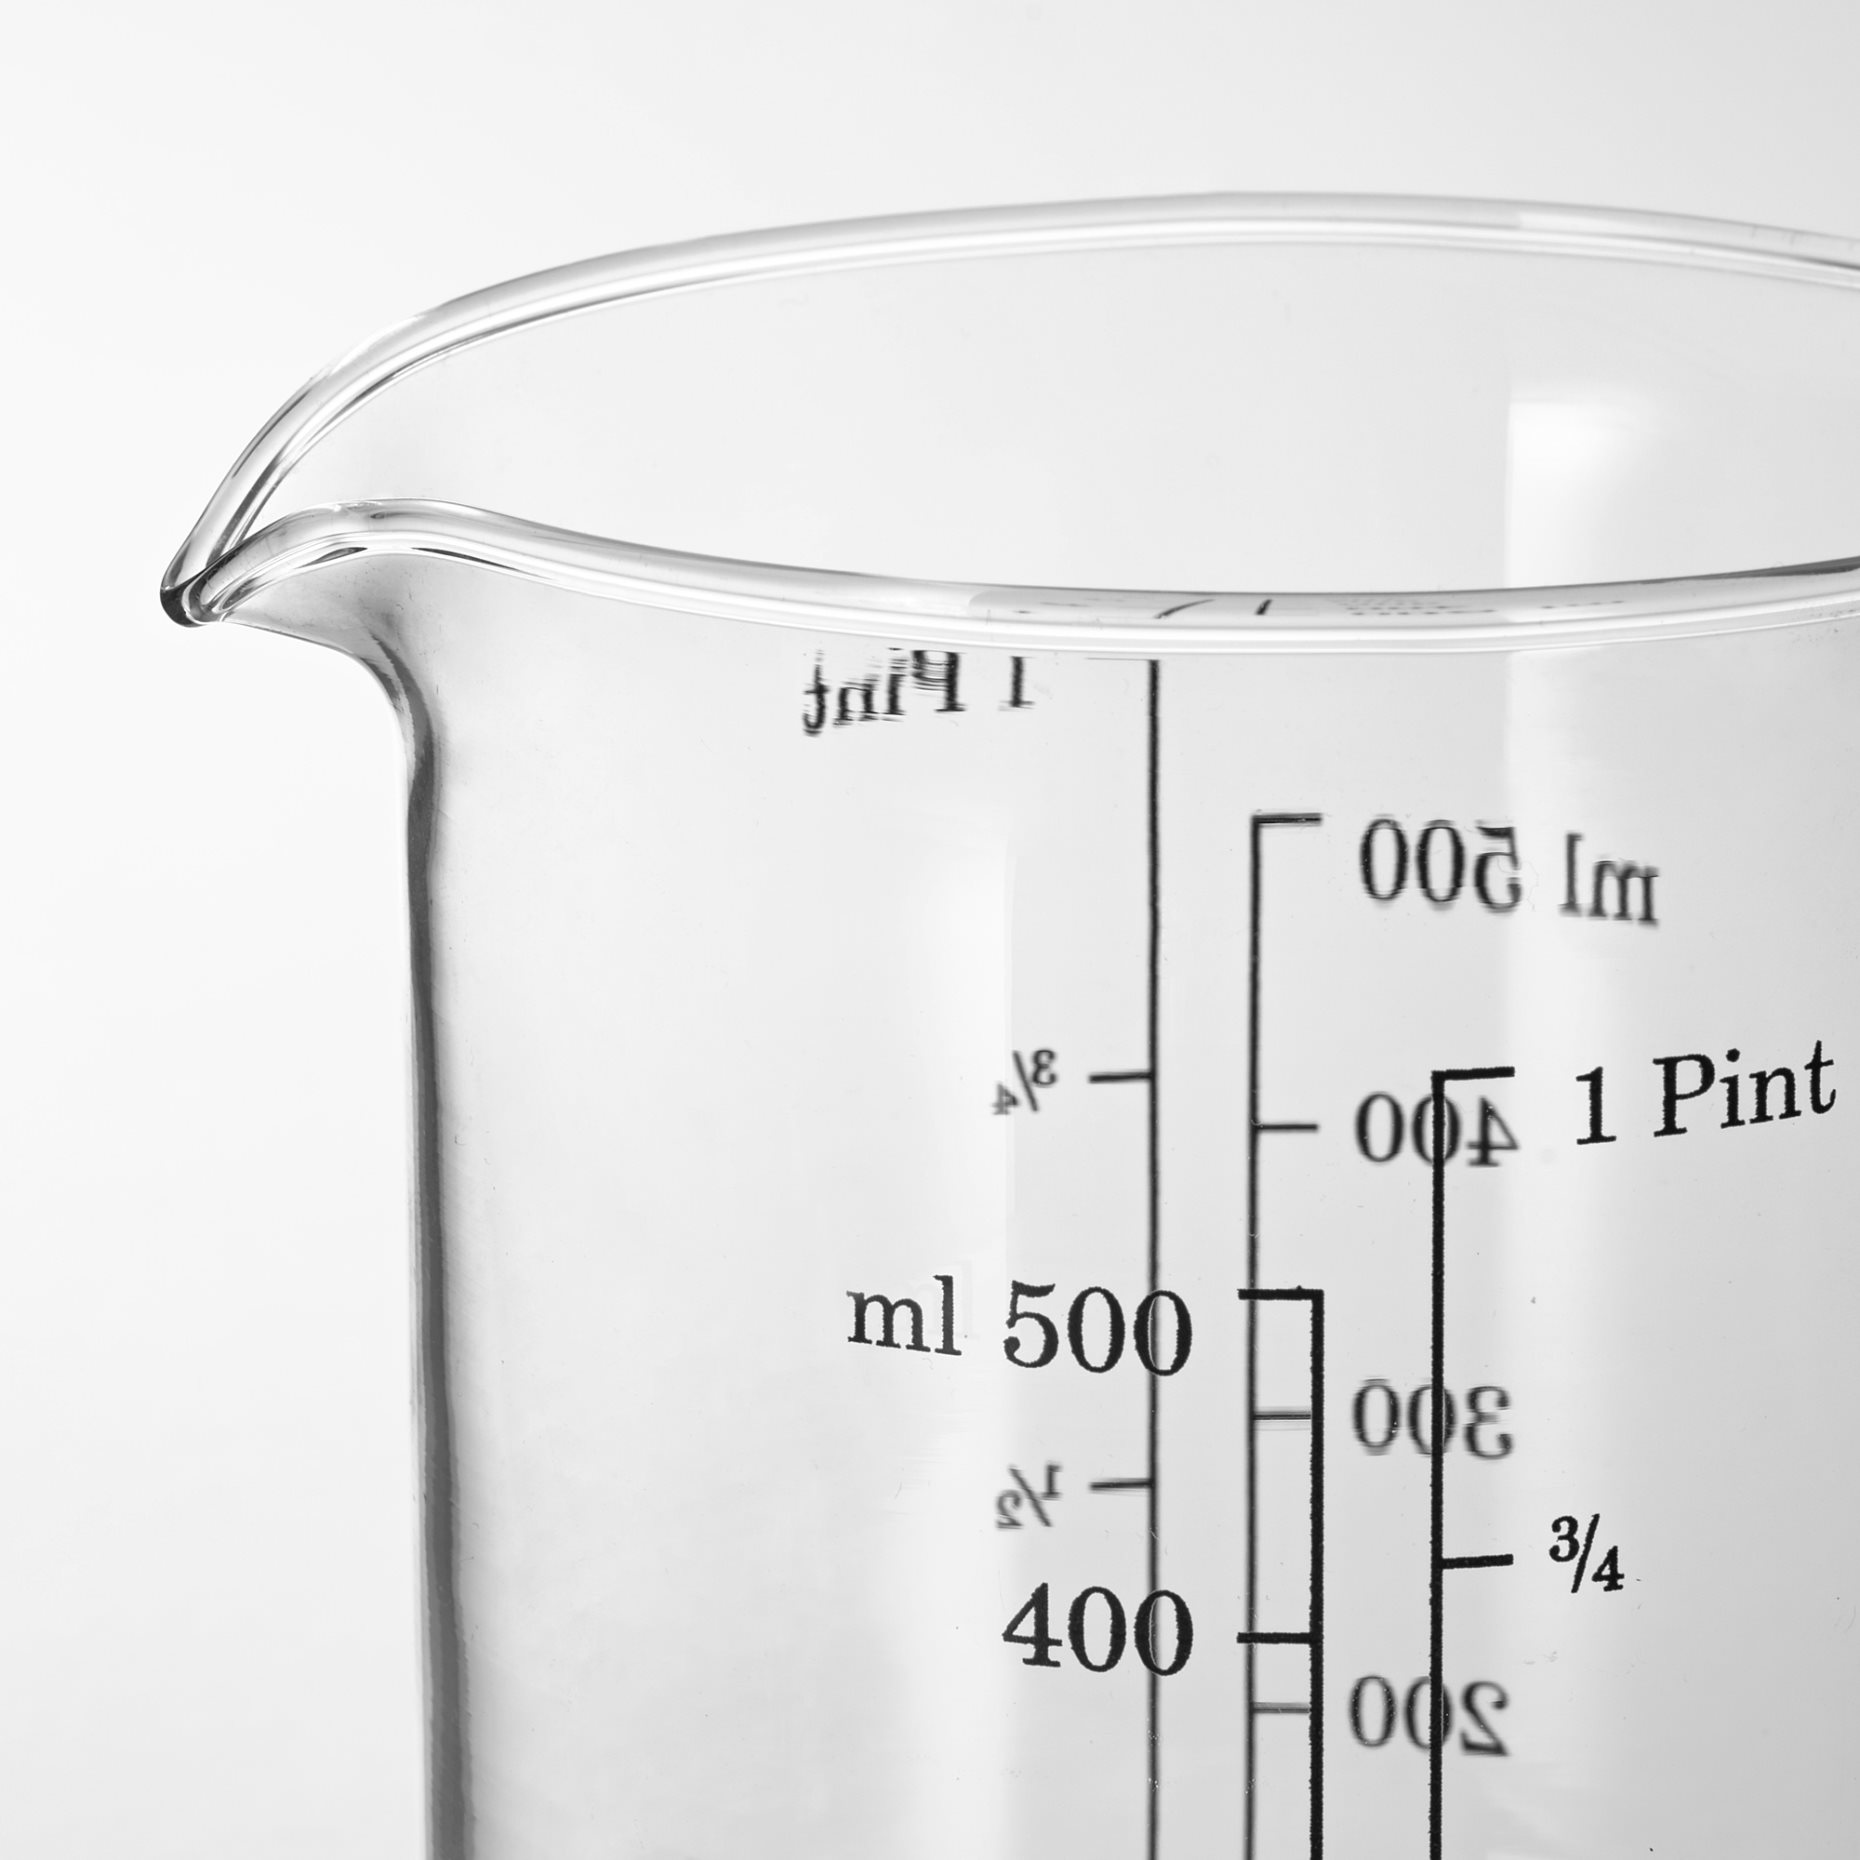 VARDAGEN, measuring jug, 803.233.03